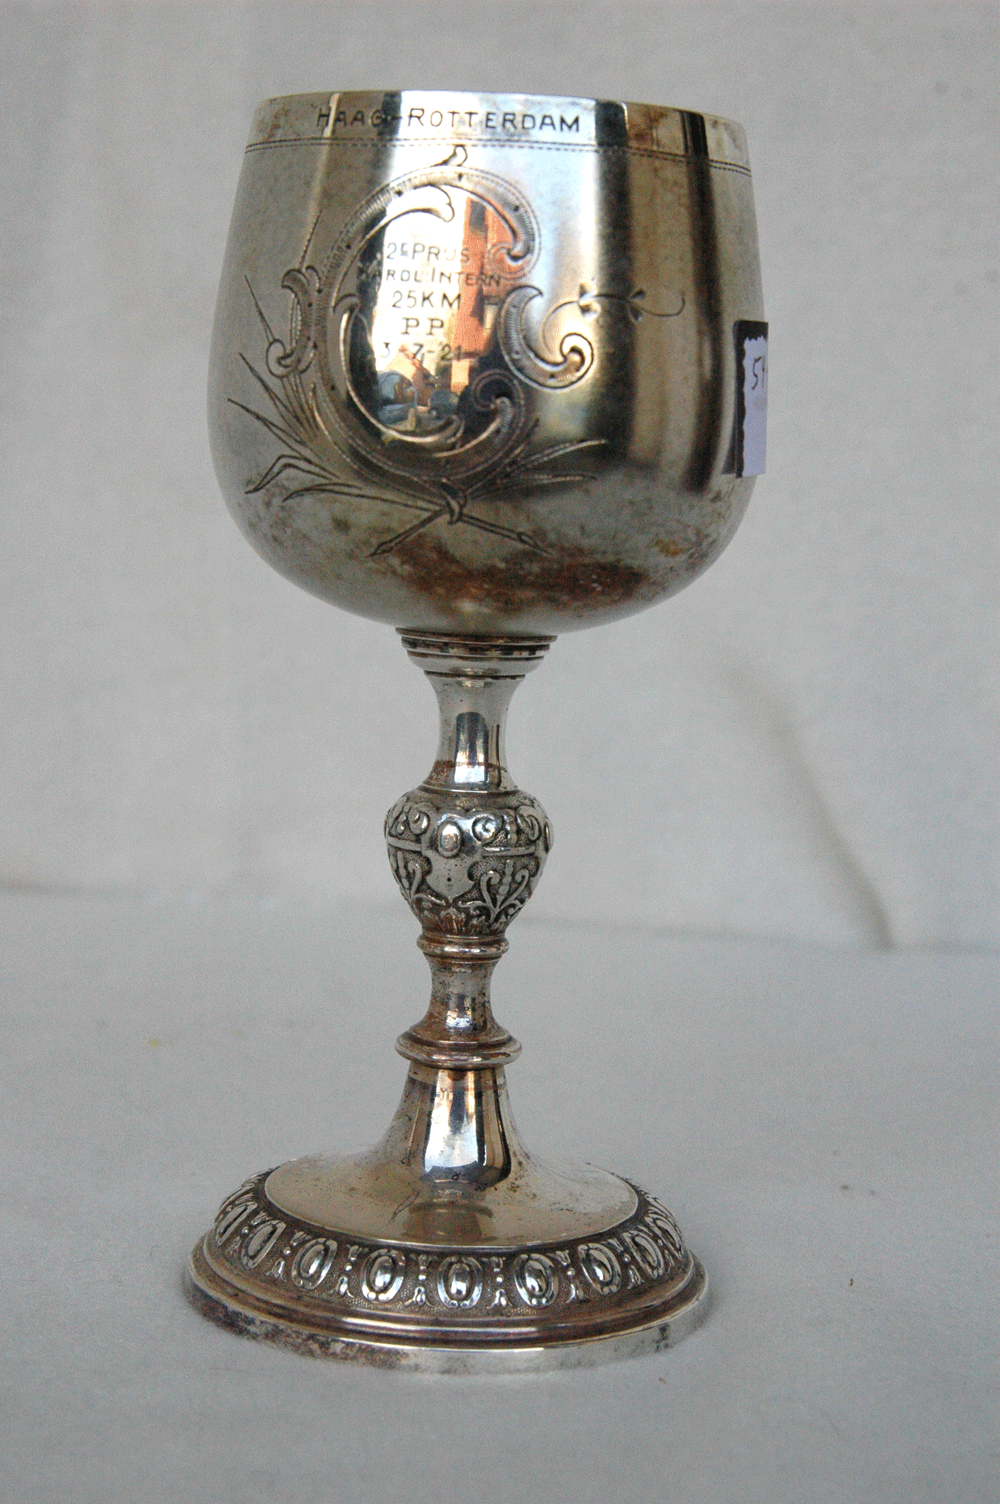 Pokal, Haag-Rotterdam, 2. Prijs 25 km PP 3-7-21, WMF Straußenmarke, h= 15,5 cm